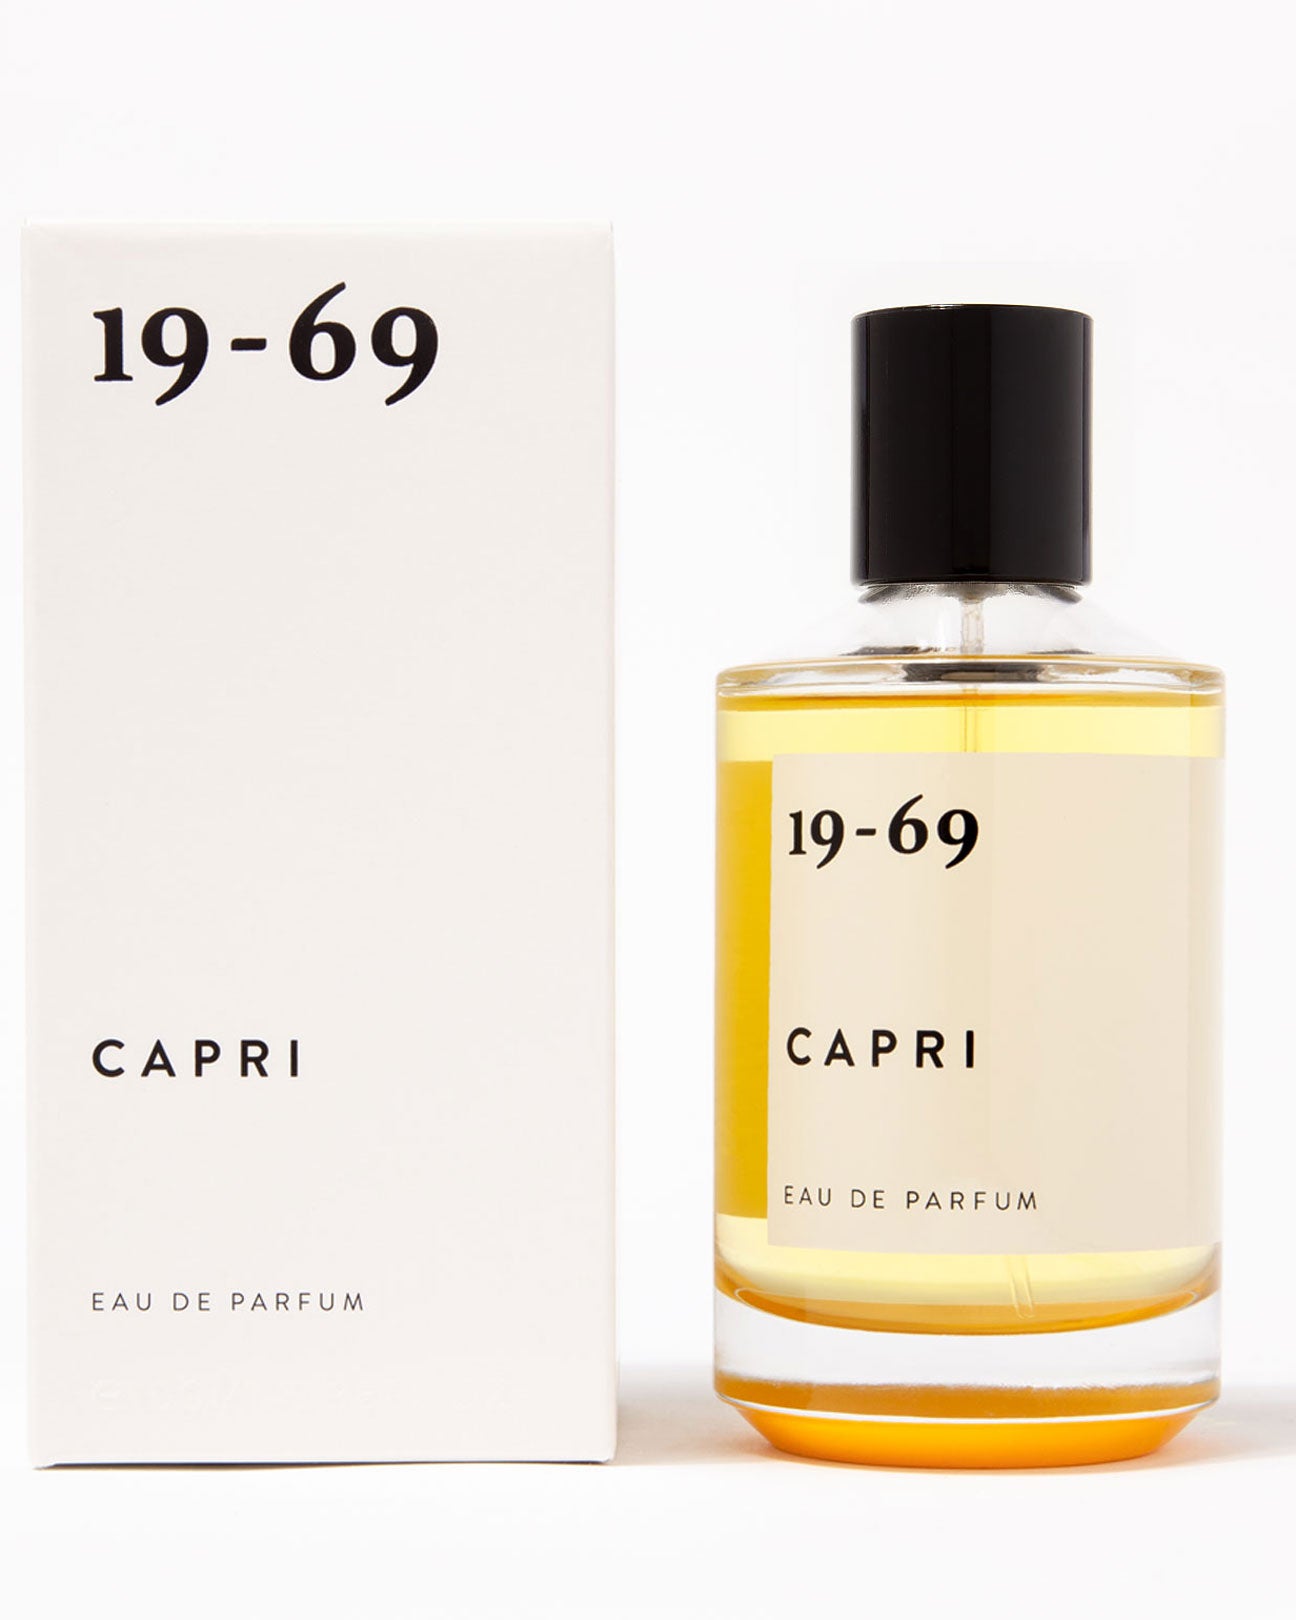 19-69 Eau De Parfum 30ml. in Capri available at Lahn.shop